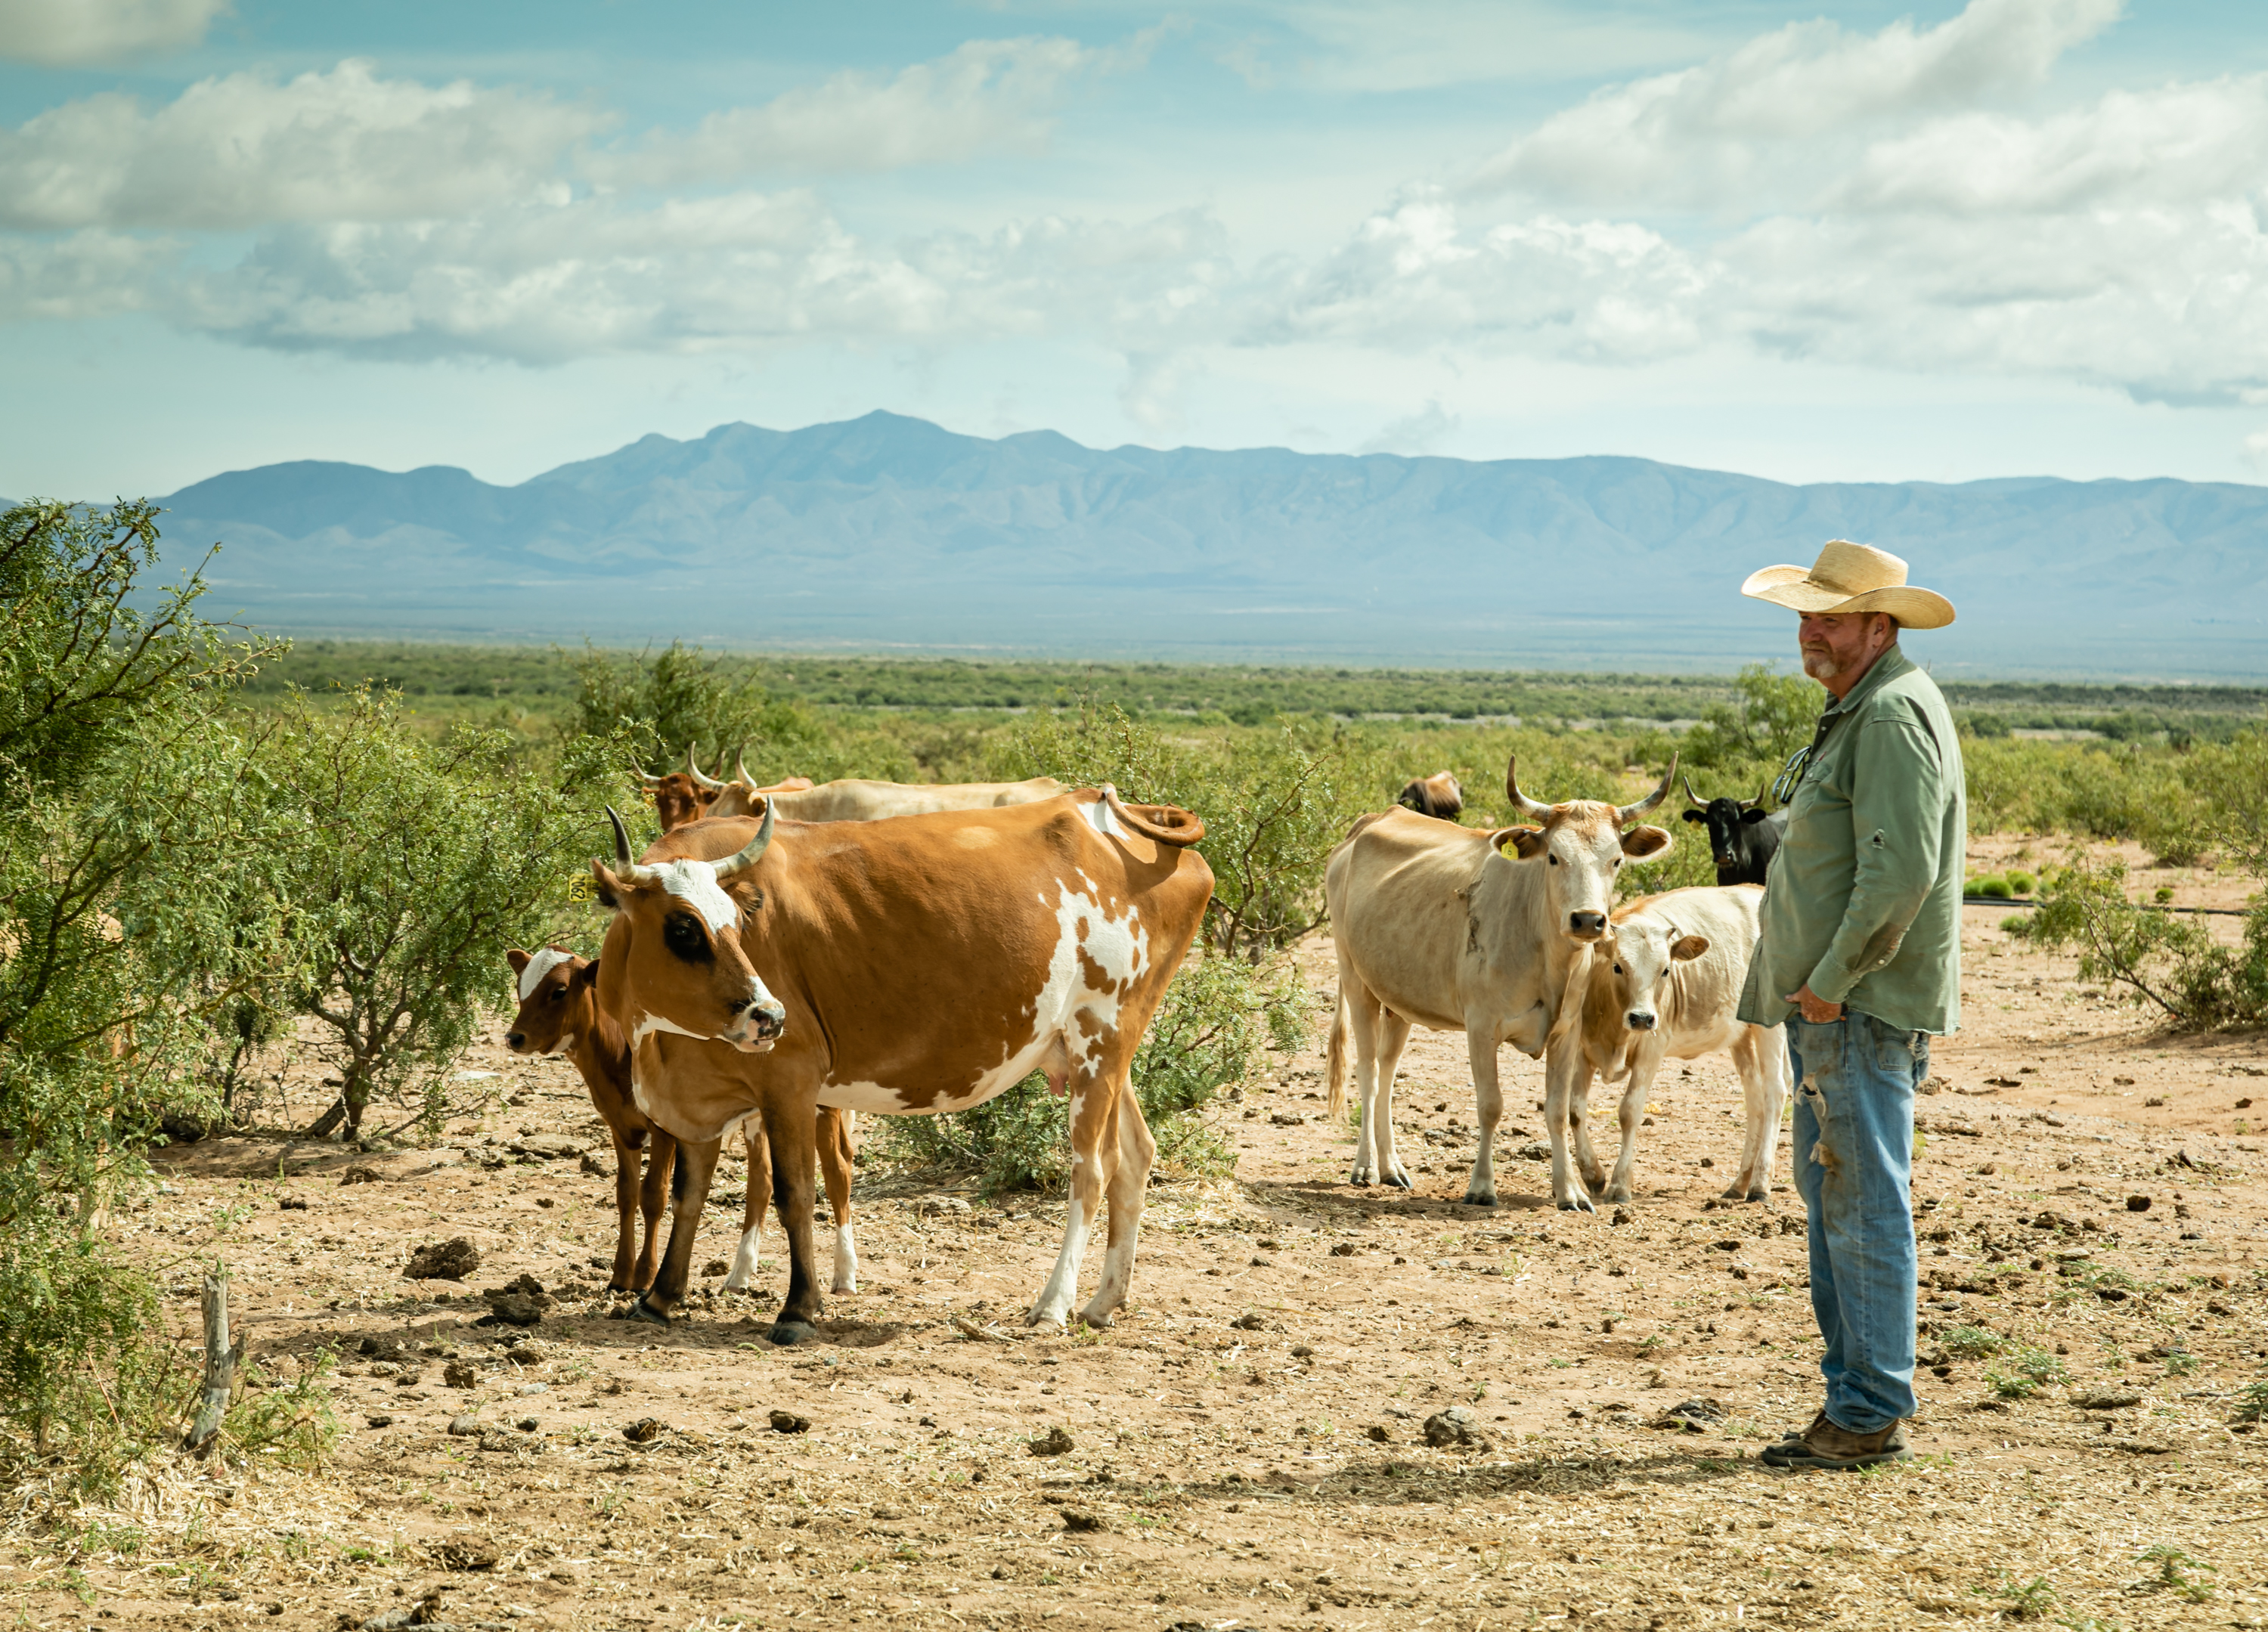 cattle in desert 